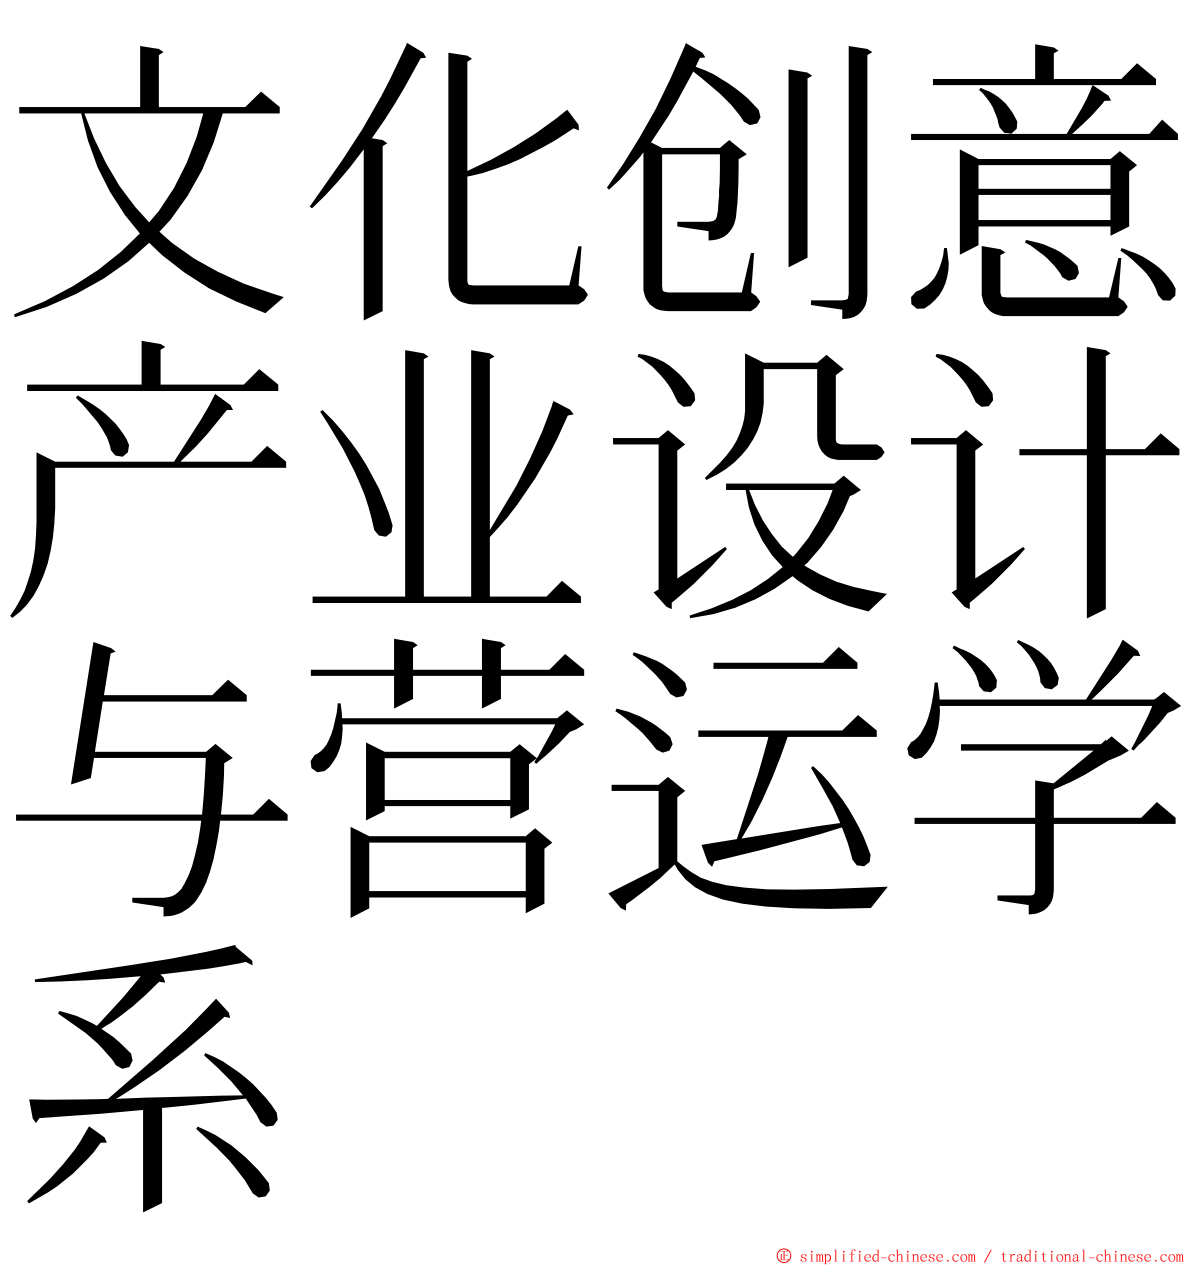 文化创意产业设计与营运学系 ming font